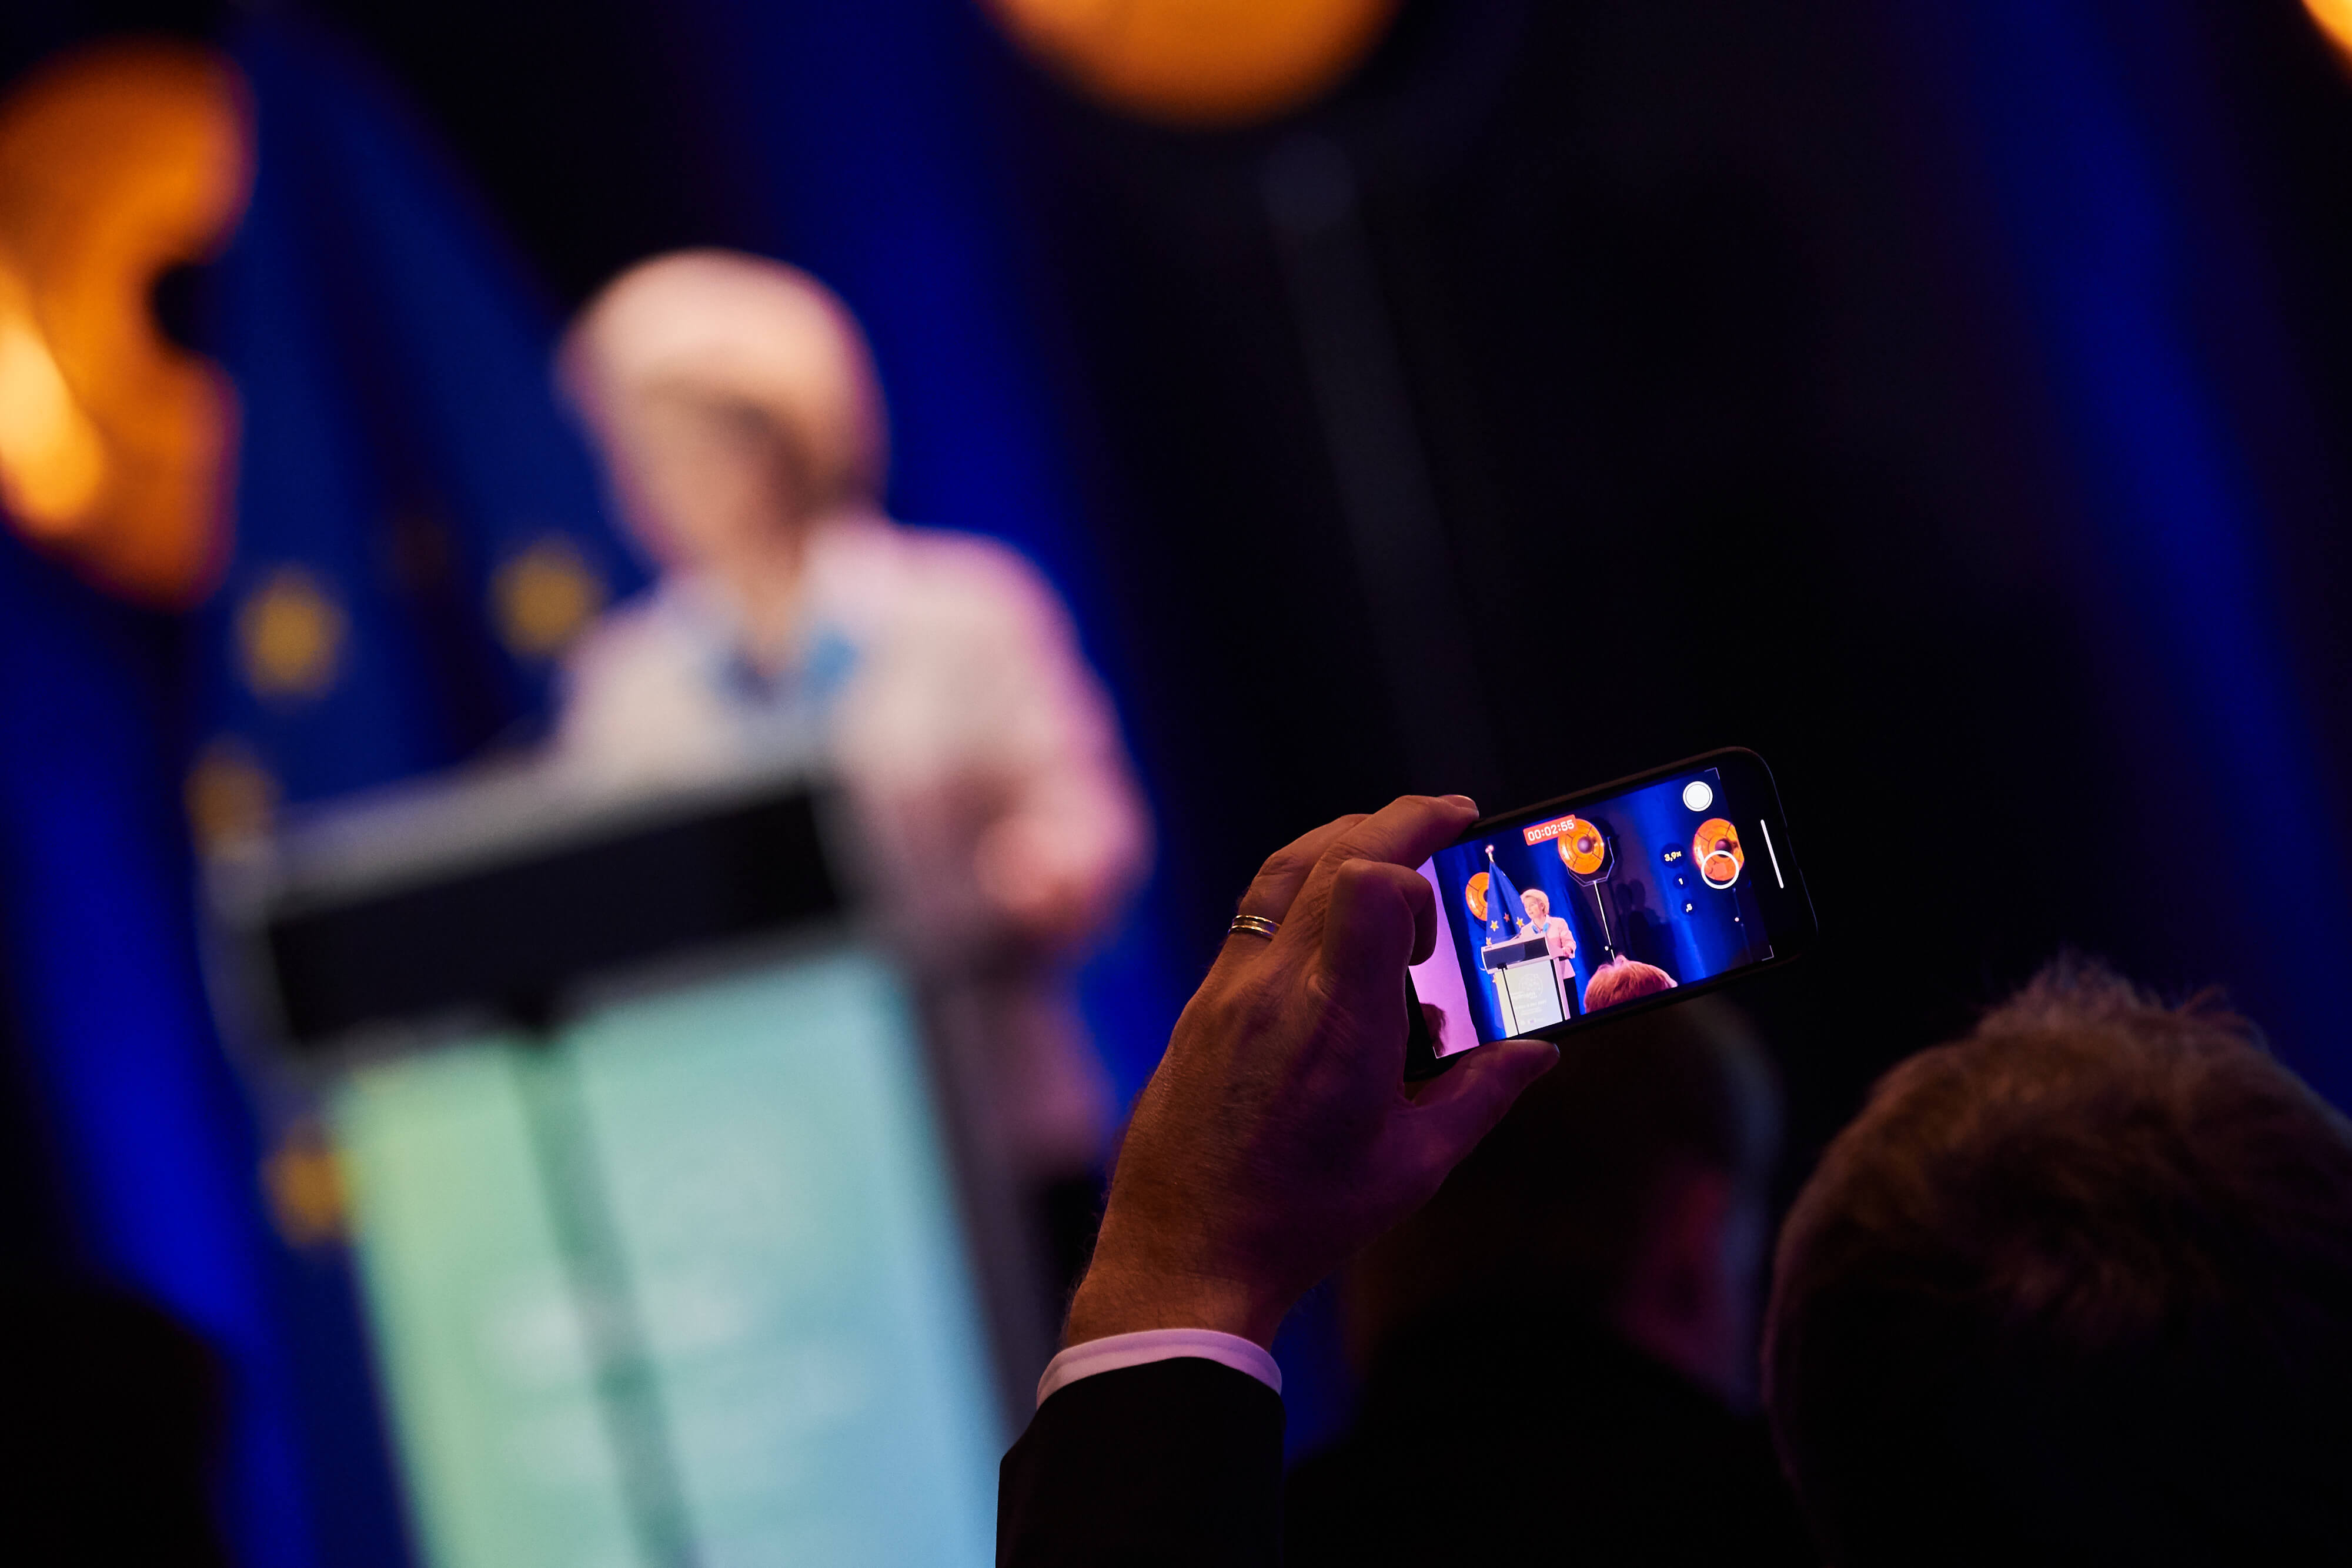 Voorzitter van de Europese Commissie Ursula von der Leyen tijdens een toespraak in 201. Europese Unie